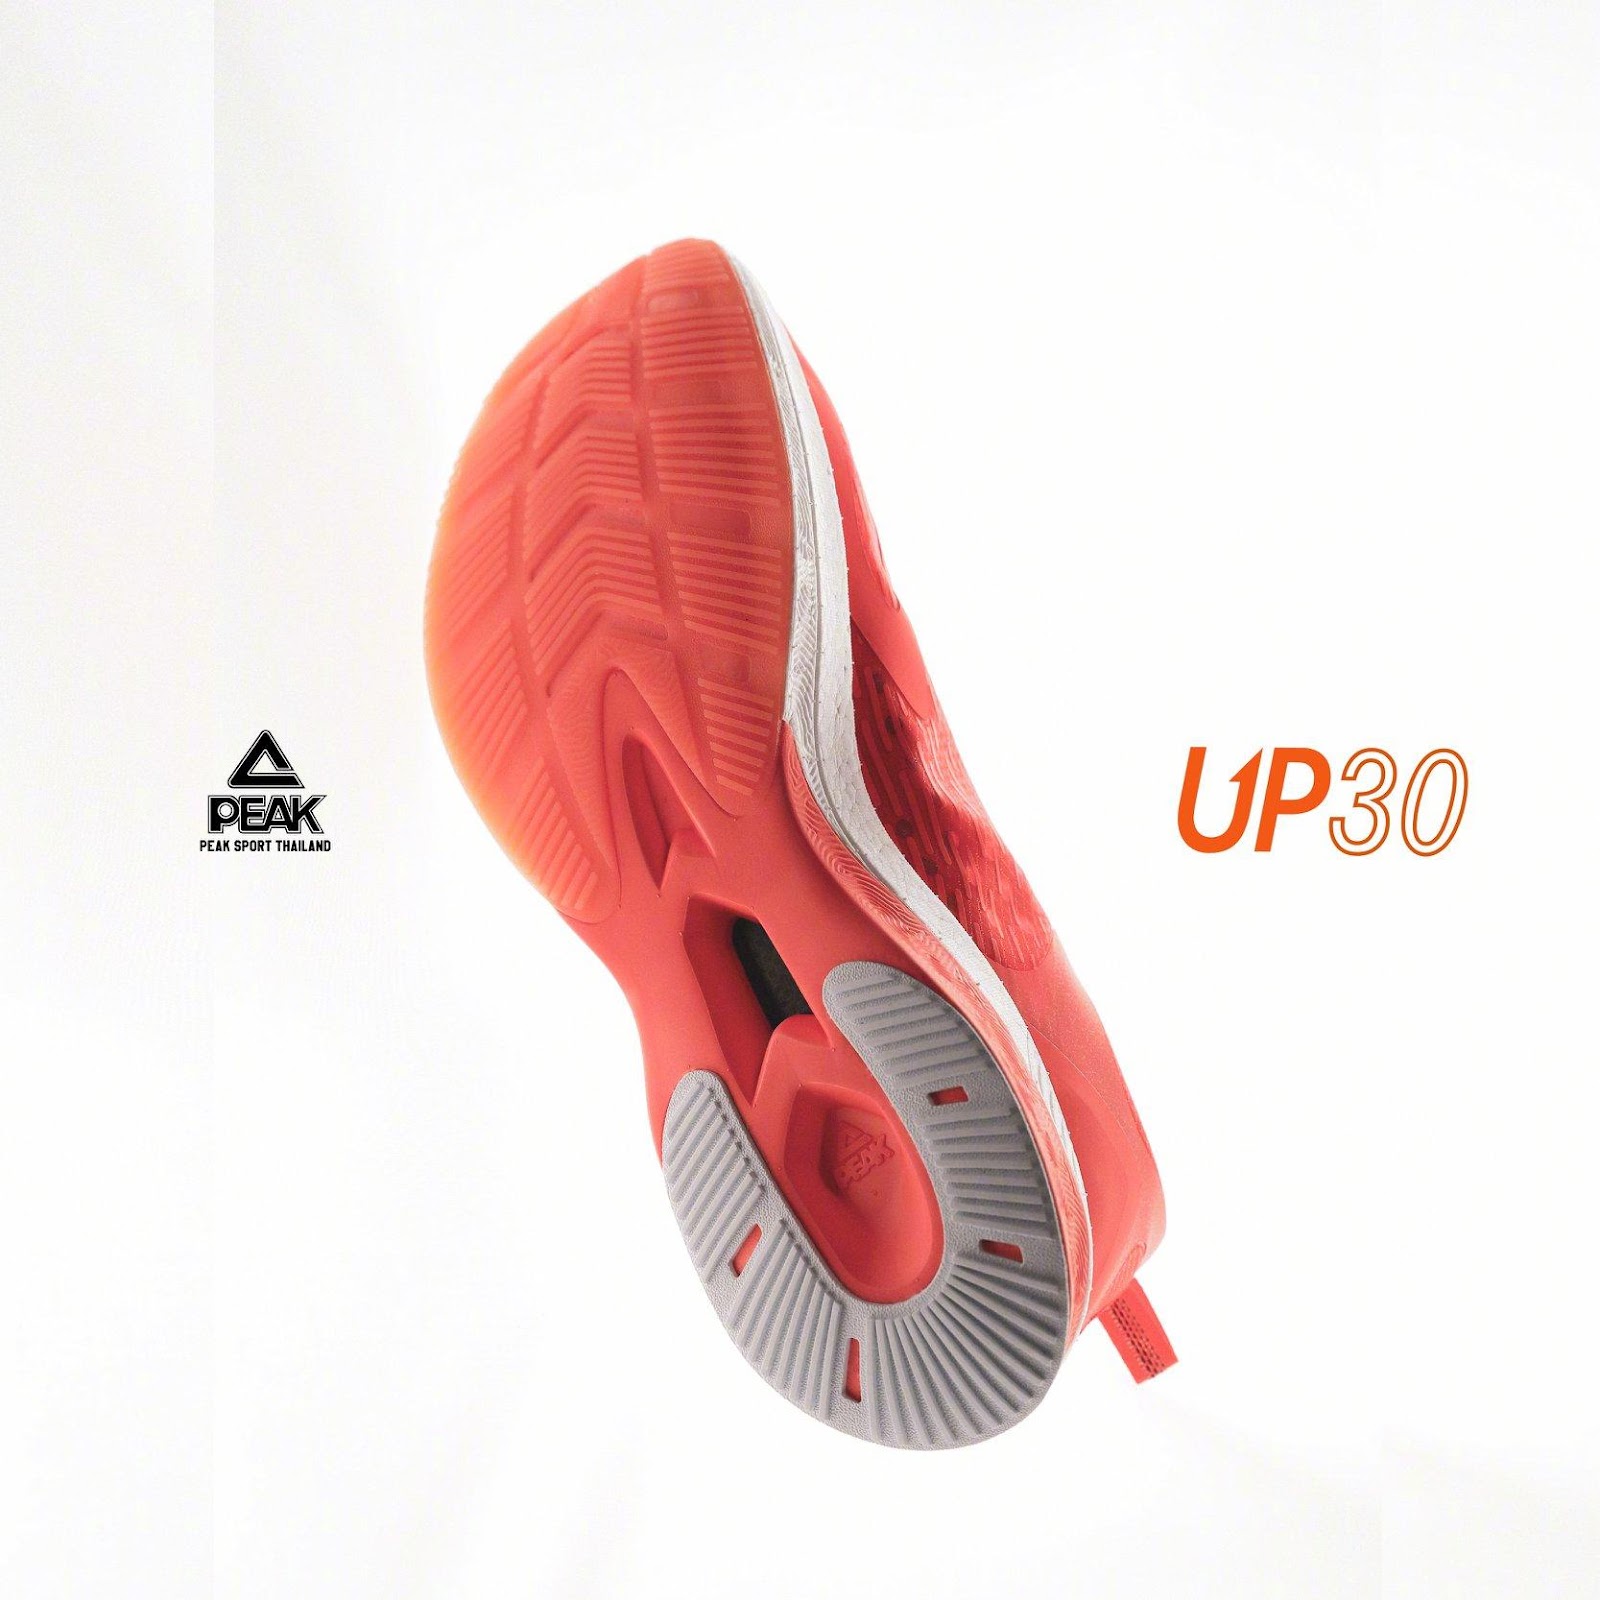 “PEAK TAICHI UP 30 Carbon” รองเท้าวิ่งตัวท็อปจากประเทศจีน 04